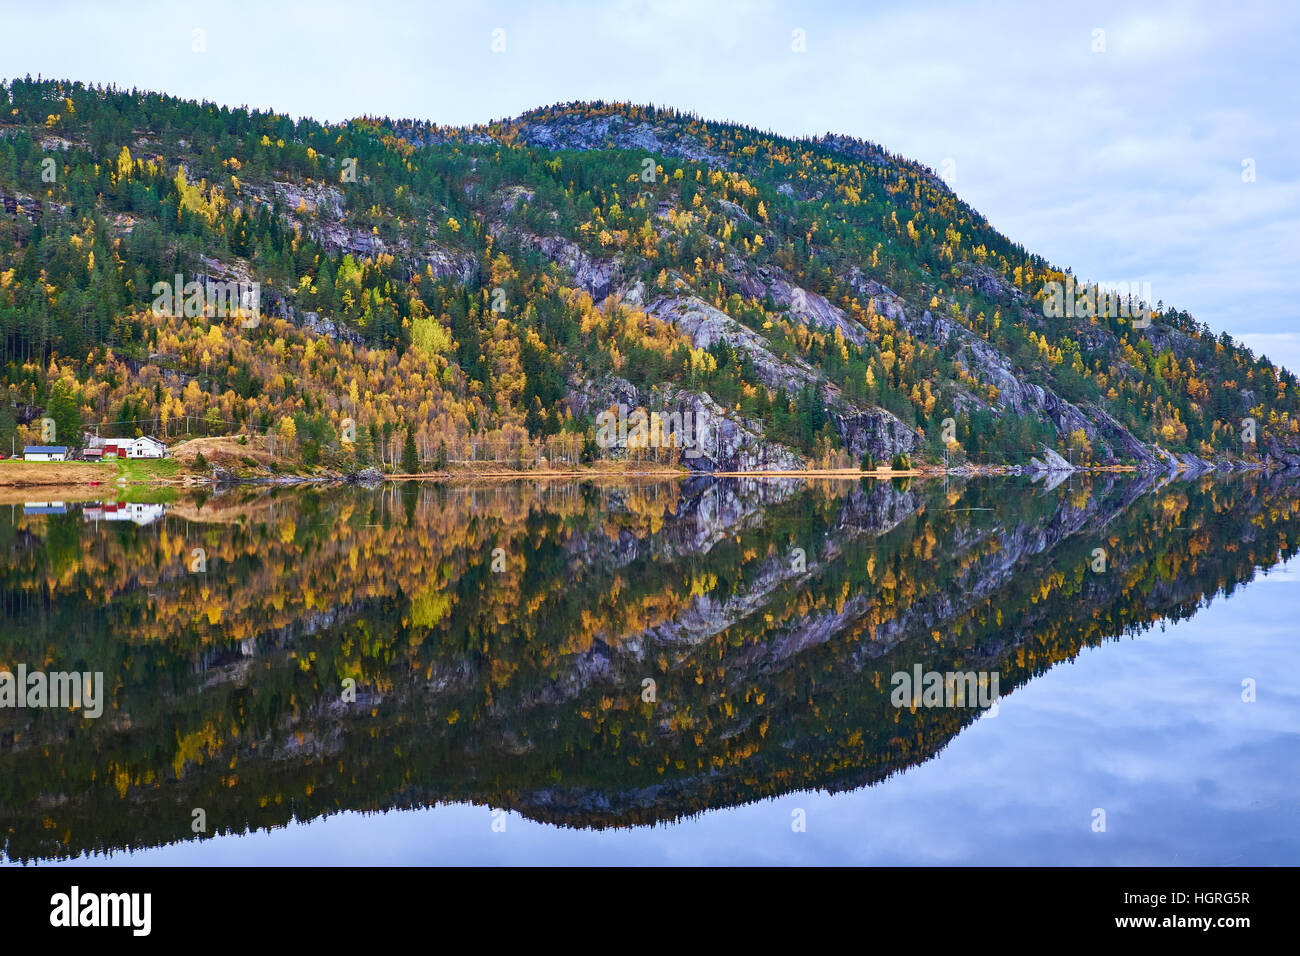 Norvegese di montagna coperti in autunno colorato di giallo birch e pinete, che si riflette nella calma completa suface acqua del lago Flaani Foto Stock